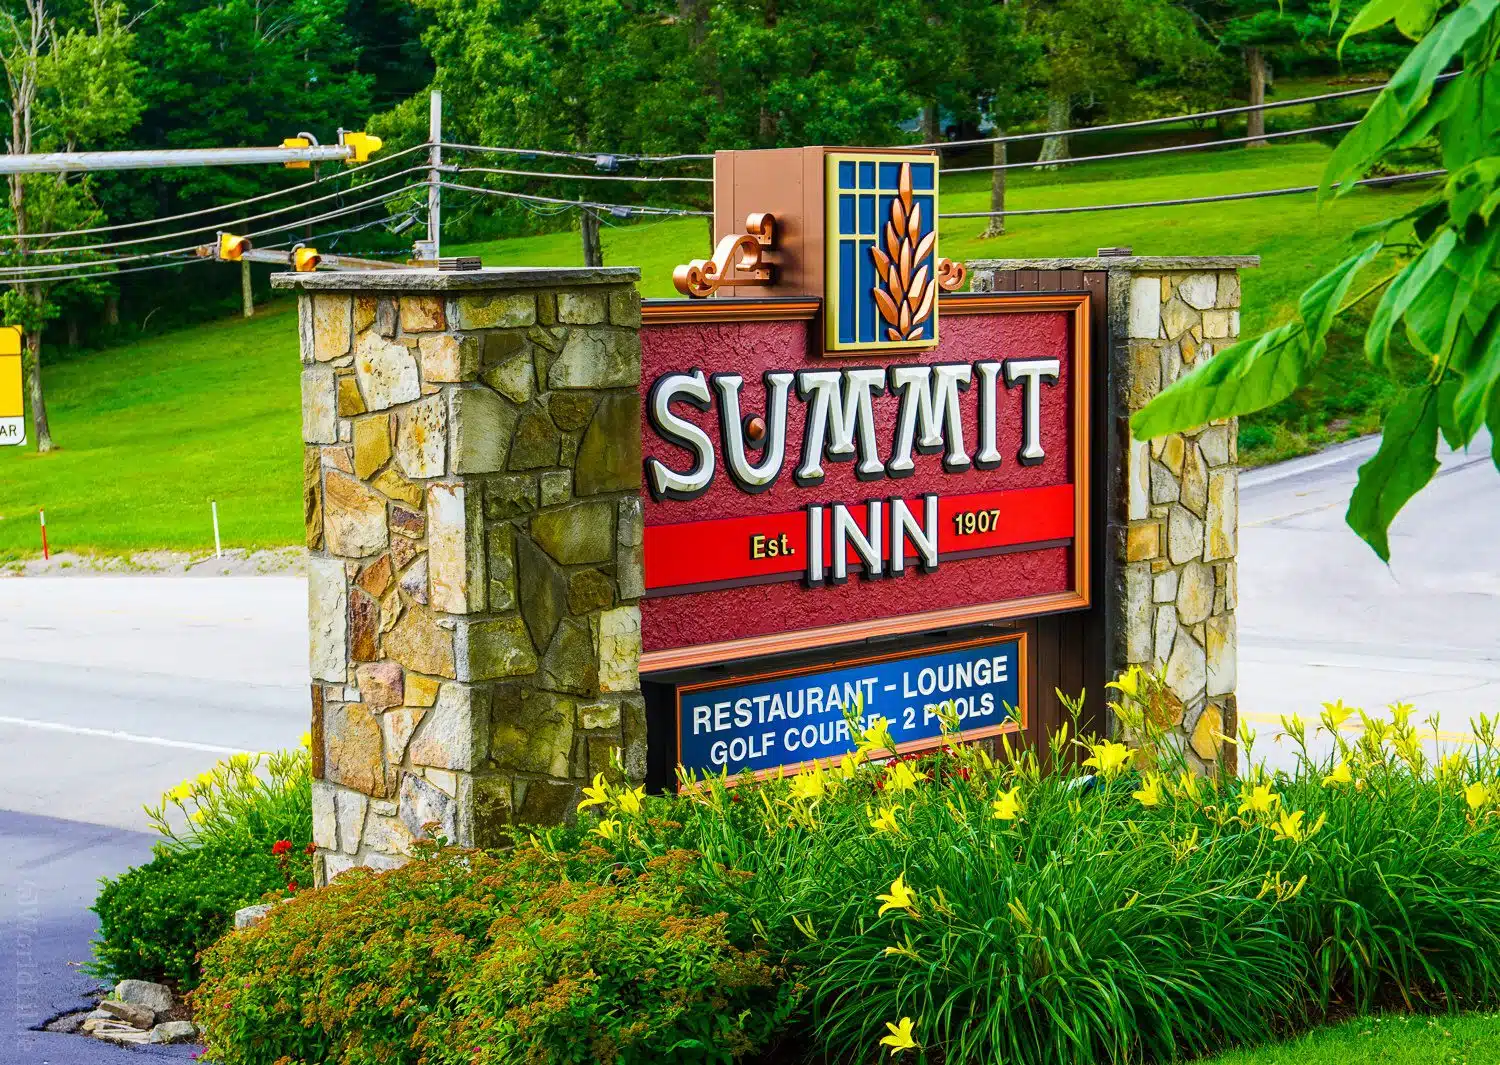 The Historic Summit Inn has been around since 1907.